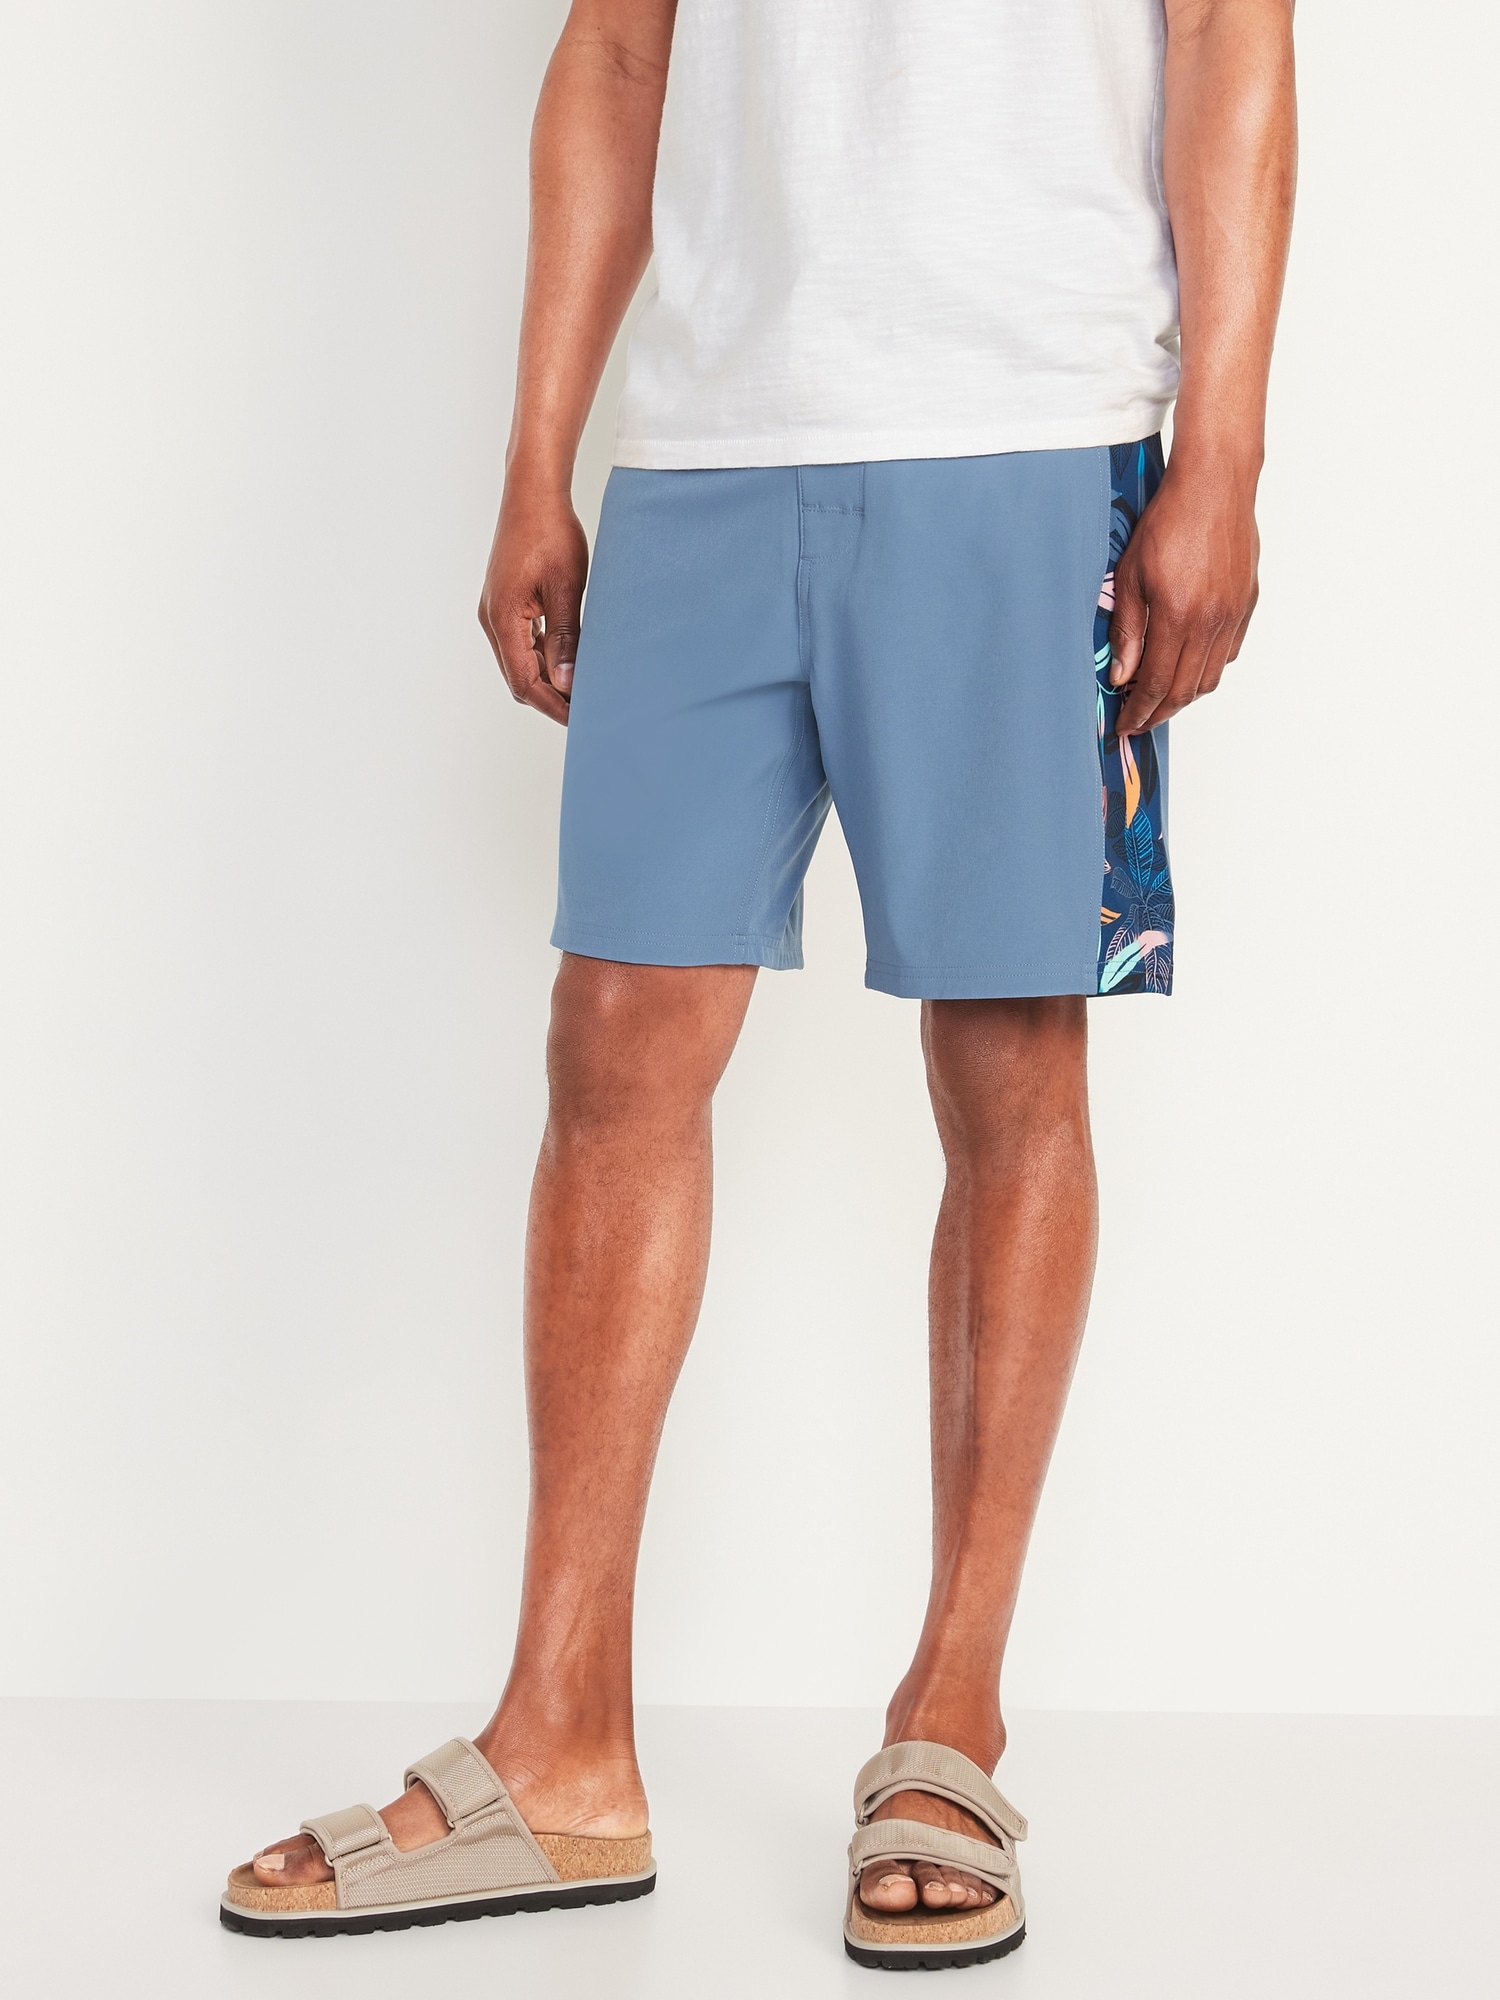 Built-In Flex Side-Stripe Board Shorts for Men -- 8-inch inseam